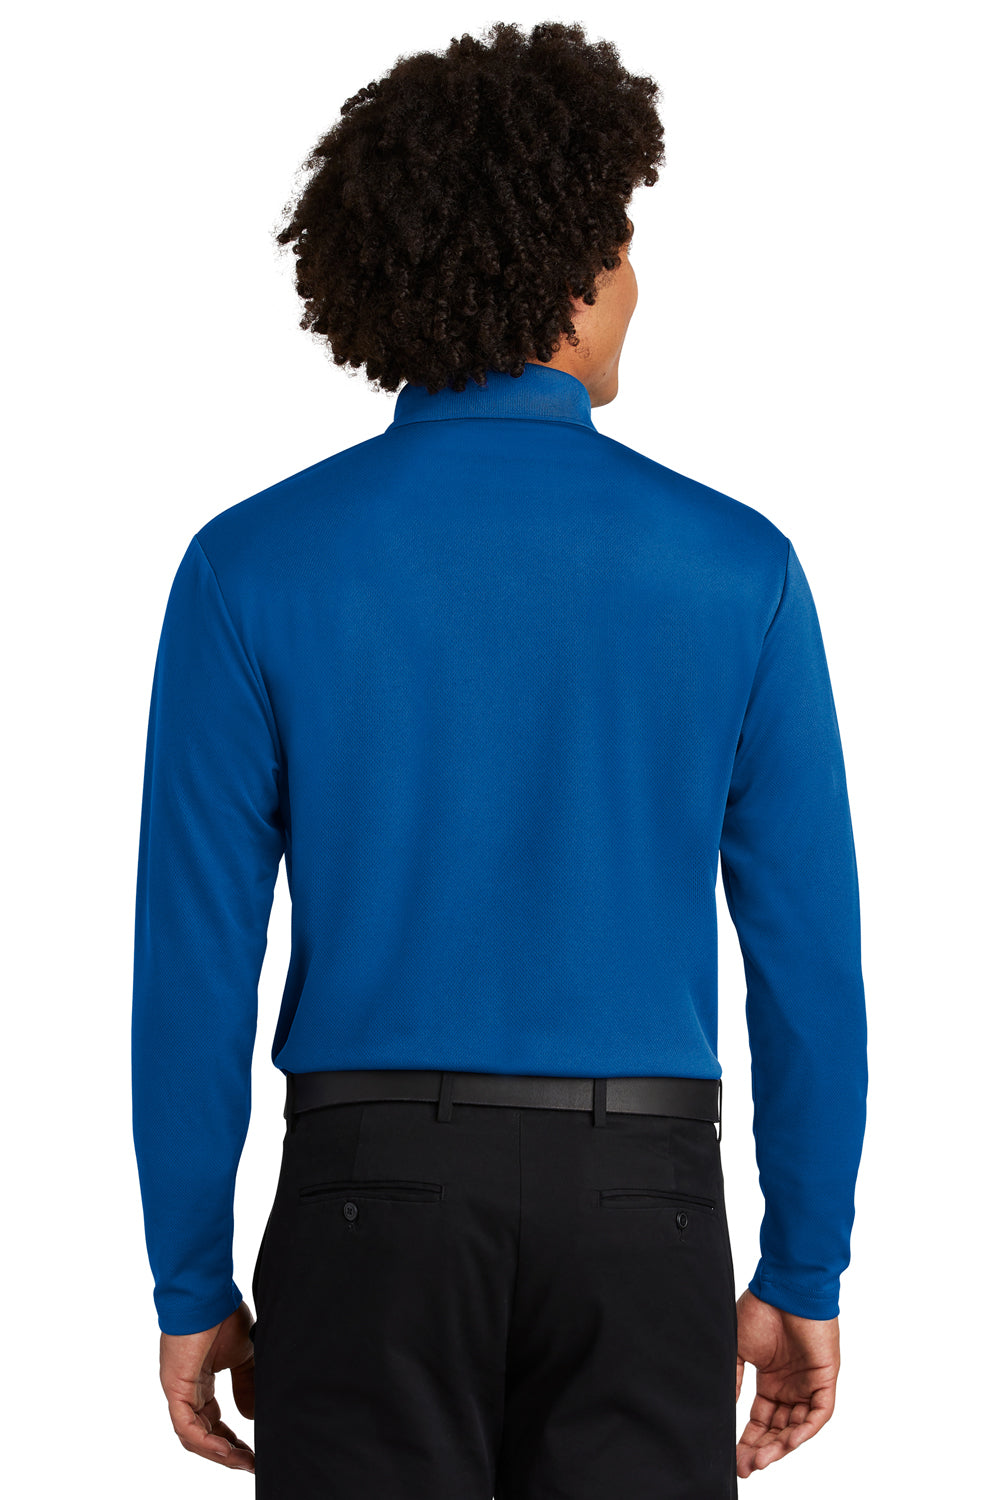 Sport-Tek ST640LS Mens RacerMesh Moisture Wicking Long Sleeve Polo Shirt Royal Blue Back